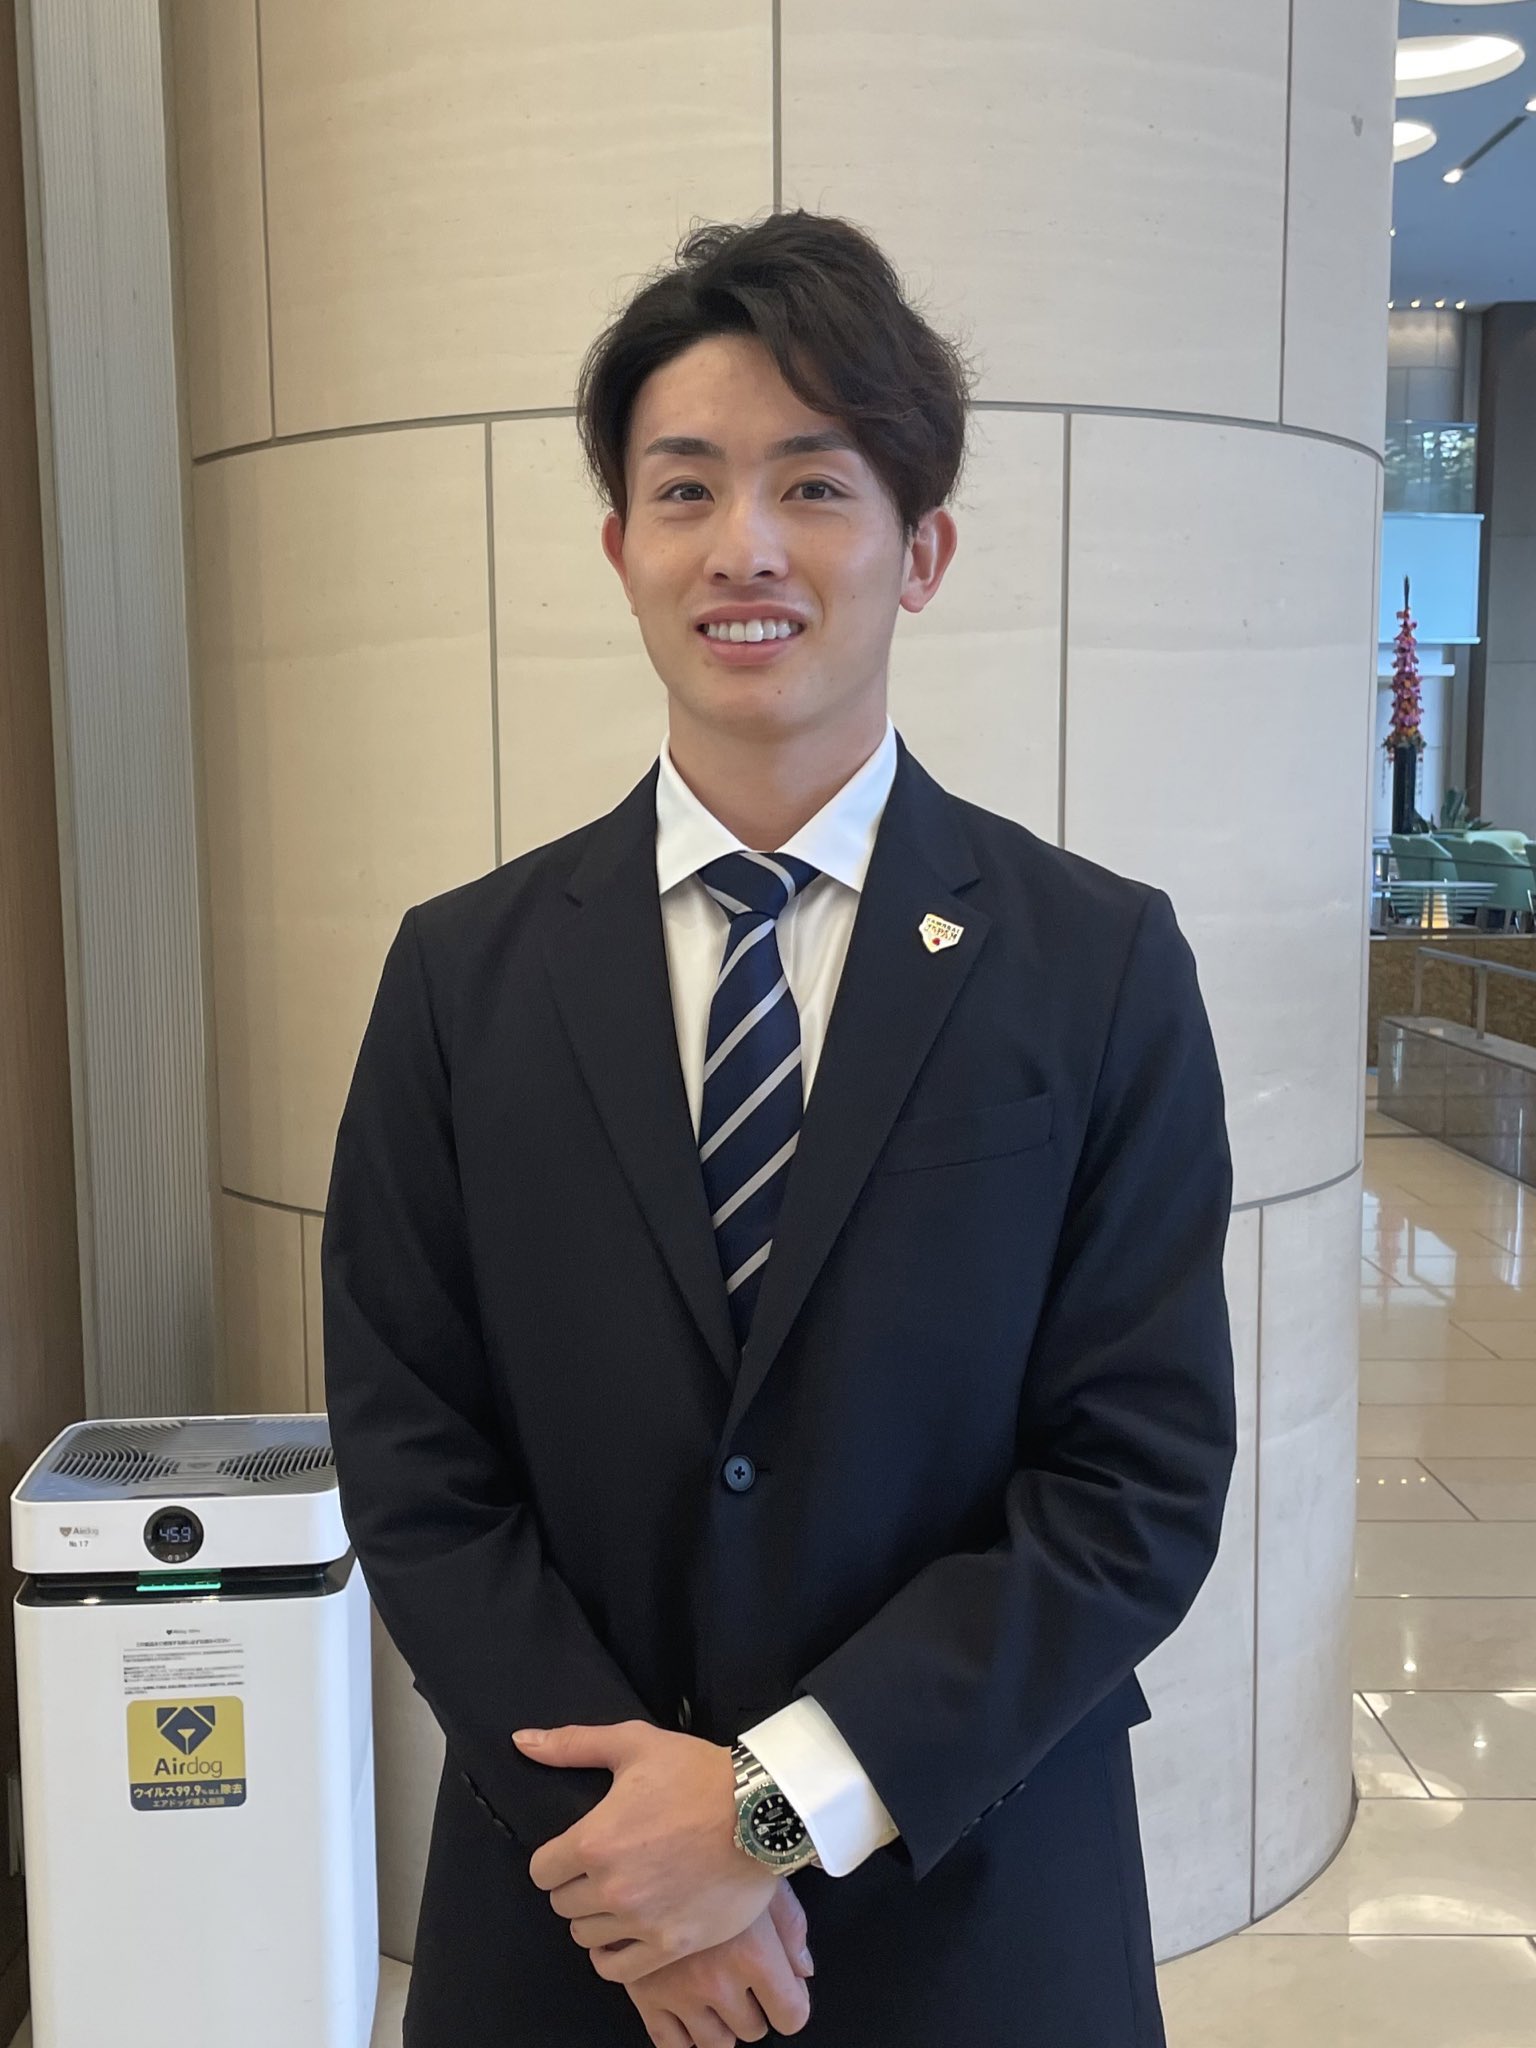 野球日本代表 侍ジャパン 公式 on Twitter: "侍ジャパンのオフィシャルスーツパートナーであるユニクロの感動ジャケット・パンツを着用